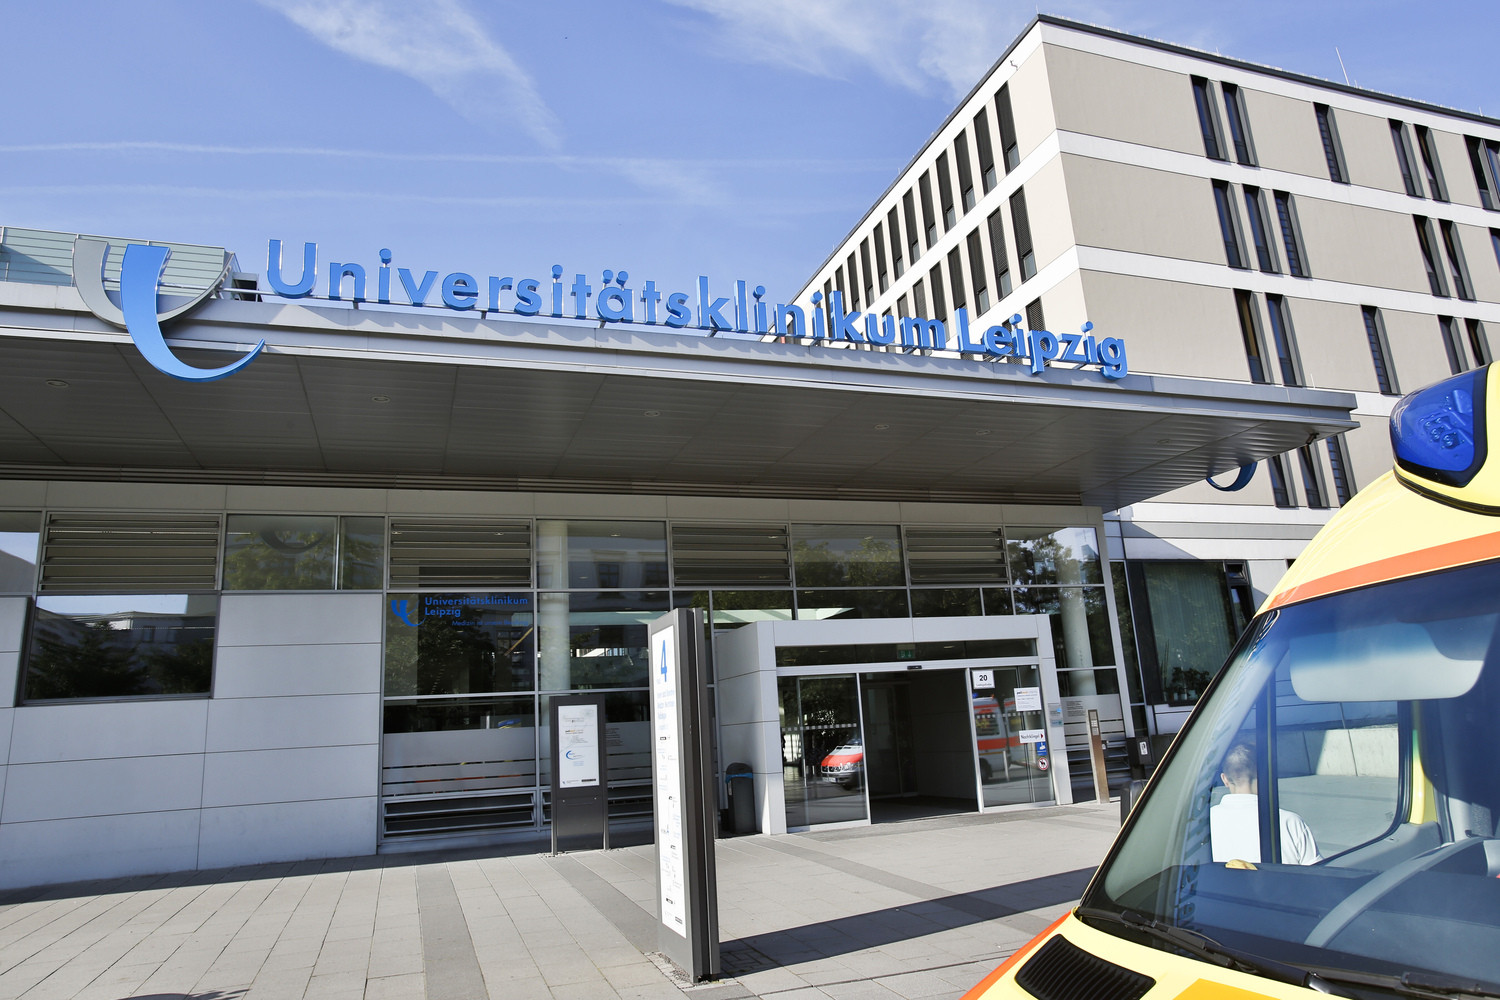 Ein weiteres Mal in der Liste der besten deutschen Krankenhäuser ganz weit oben zu finden: das Universitätsklinikum Leipzig.